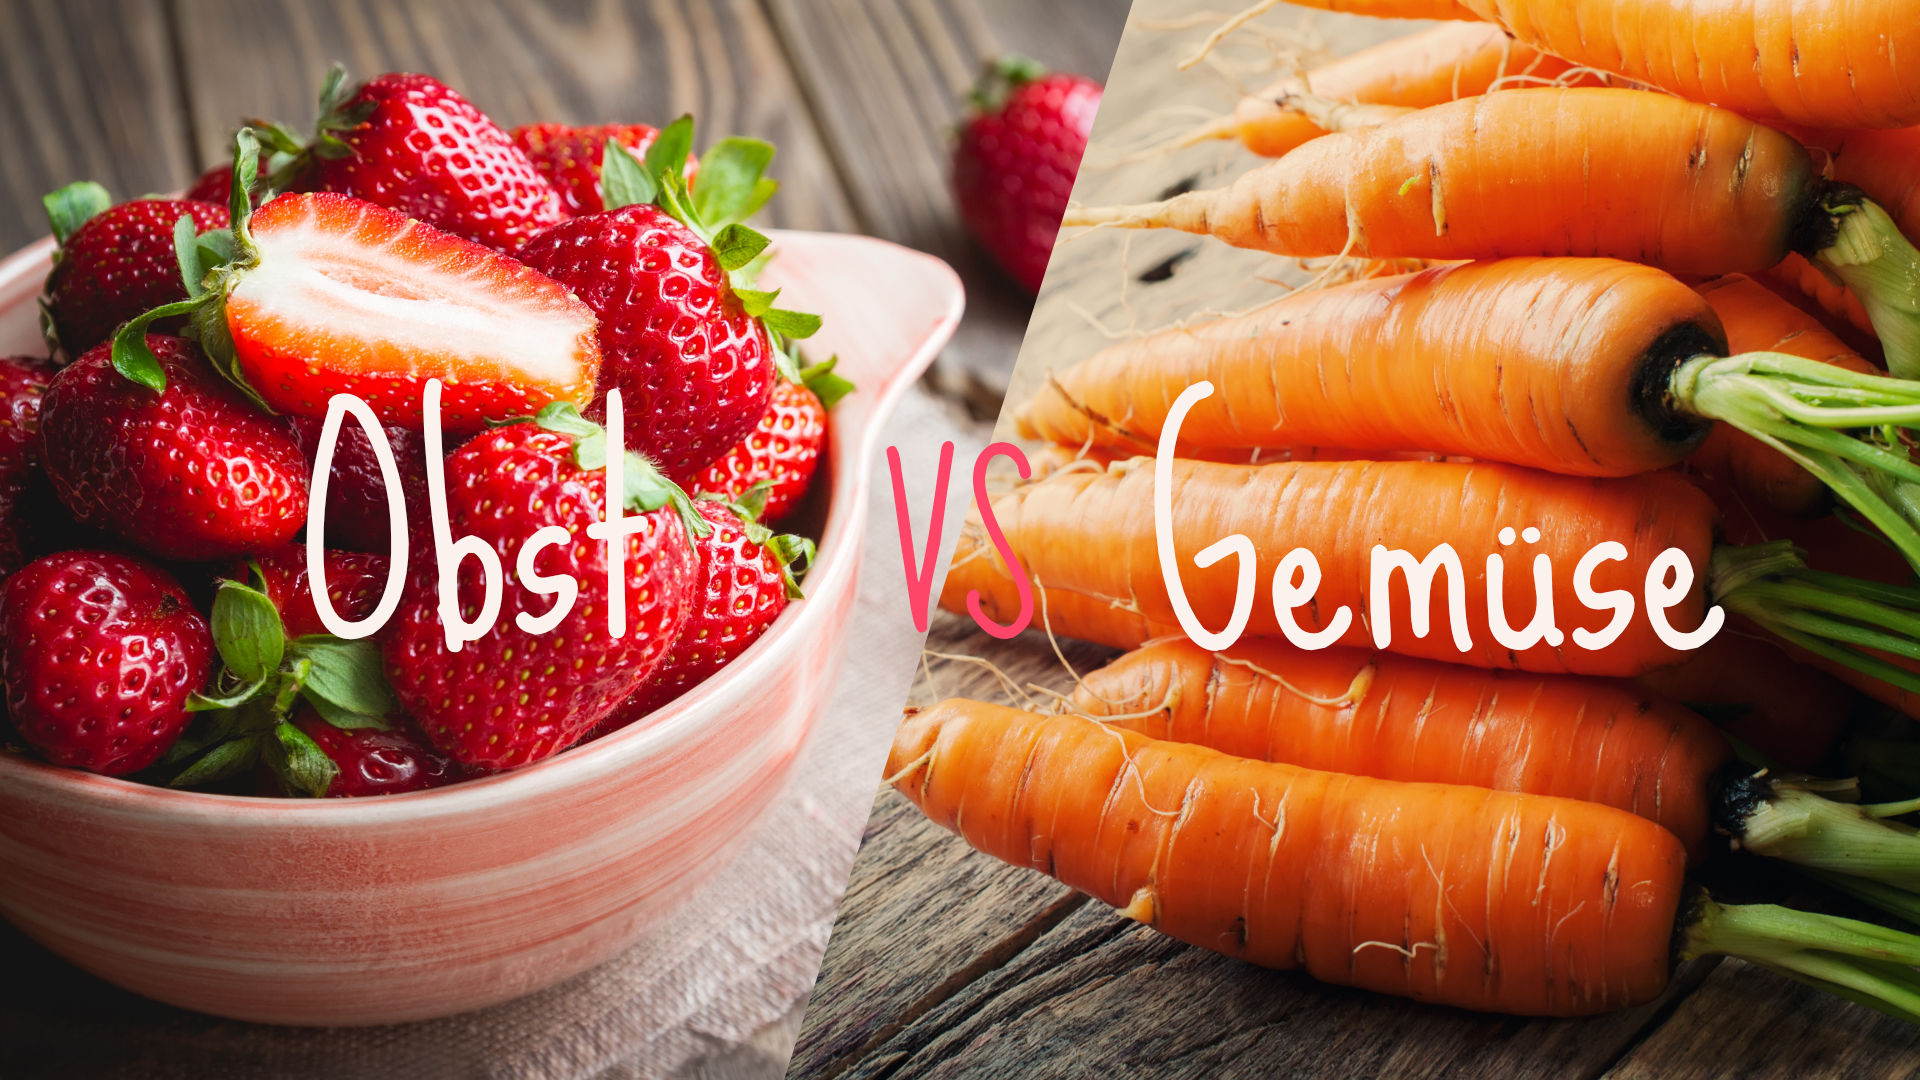 Was ist der Unterschied zwischen Obst und Gemüse?